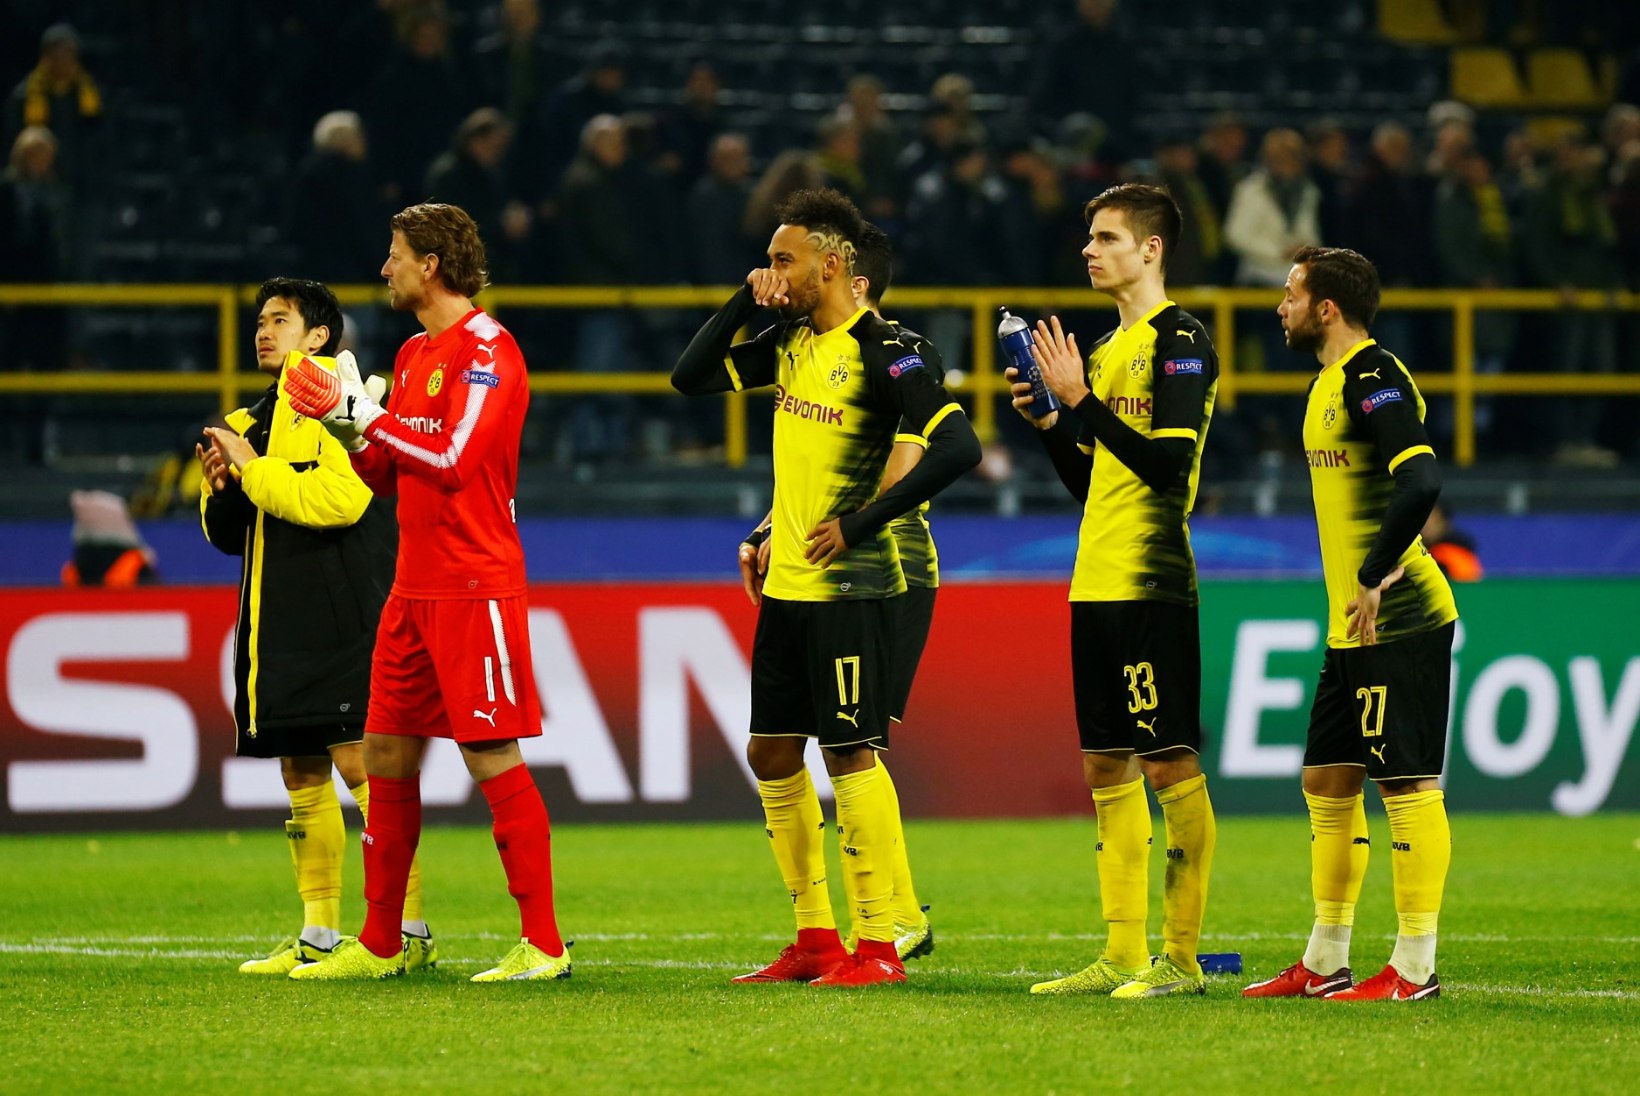 KOLMAS POOLAEG | Miks mängib Dortmundi Borussia kohutavat jalgpalli?